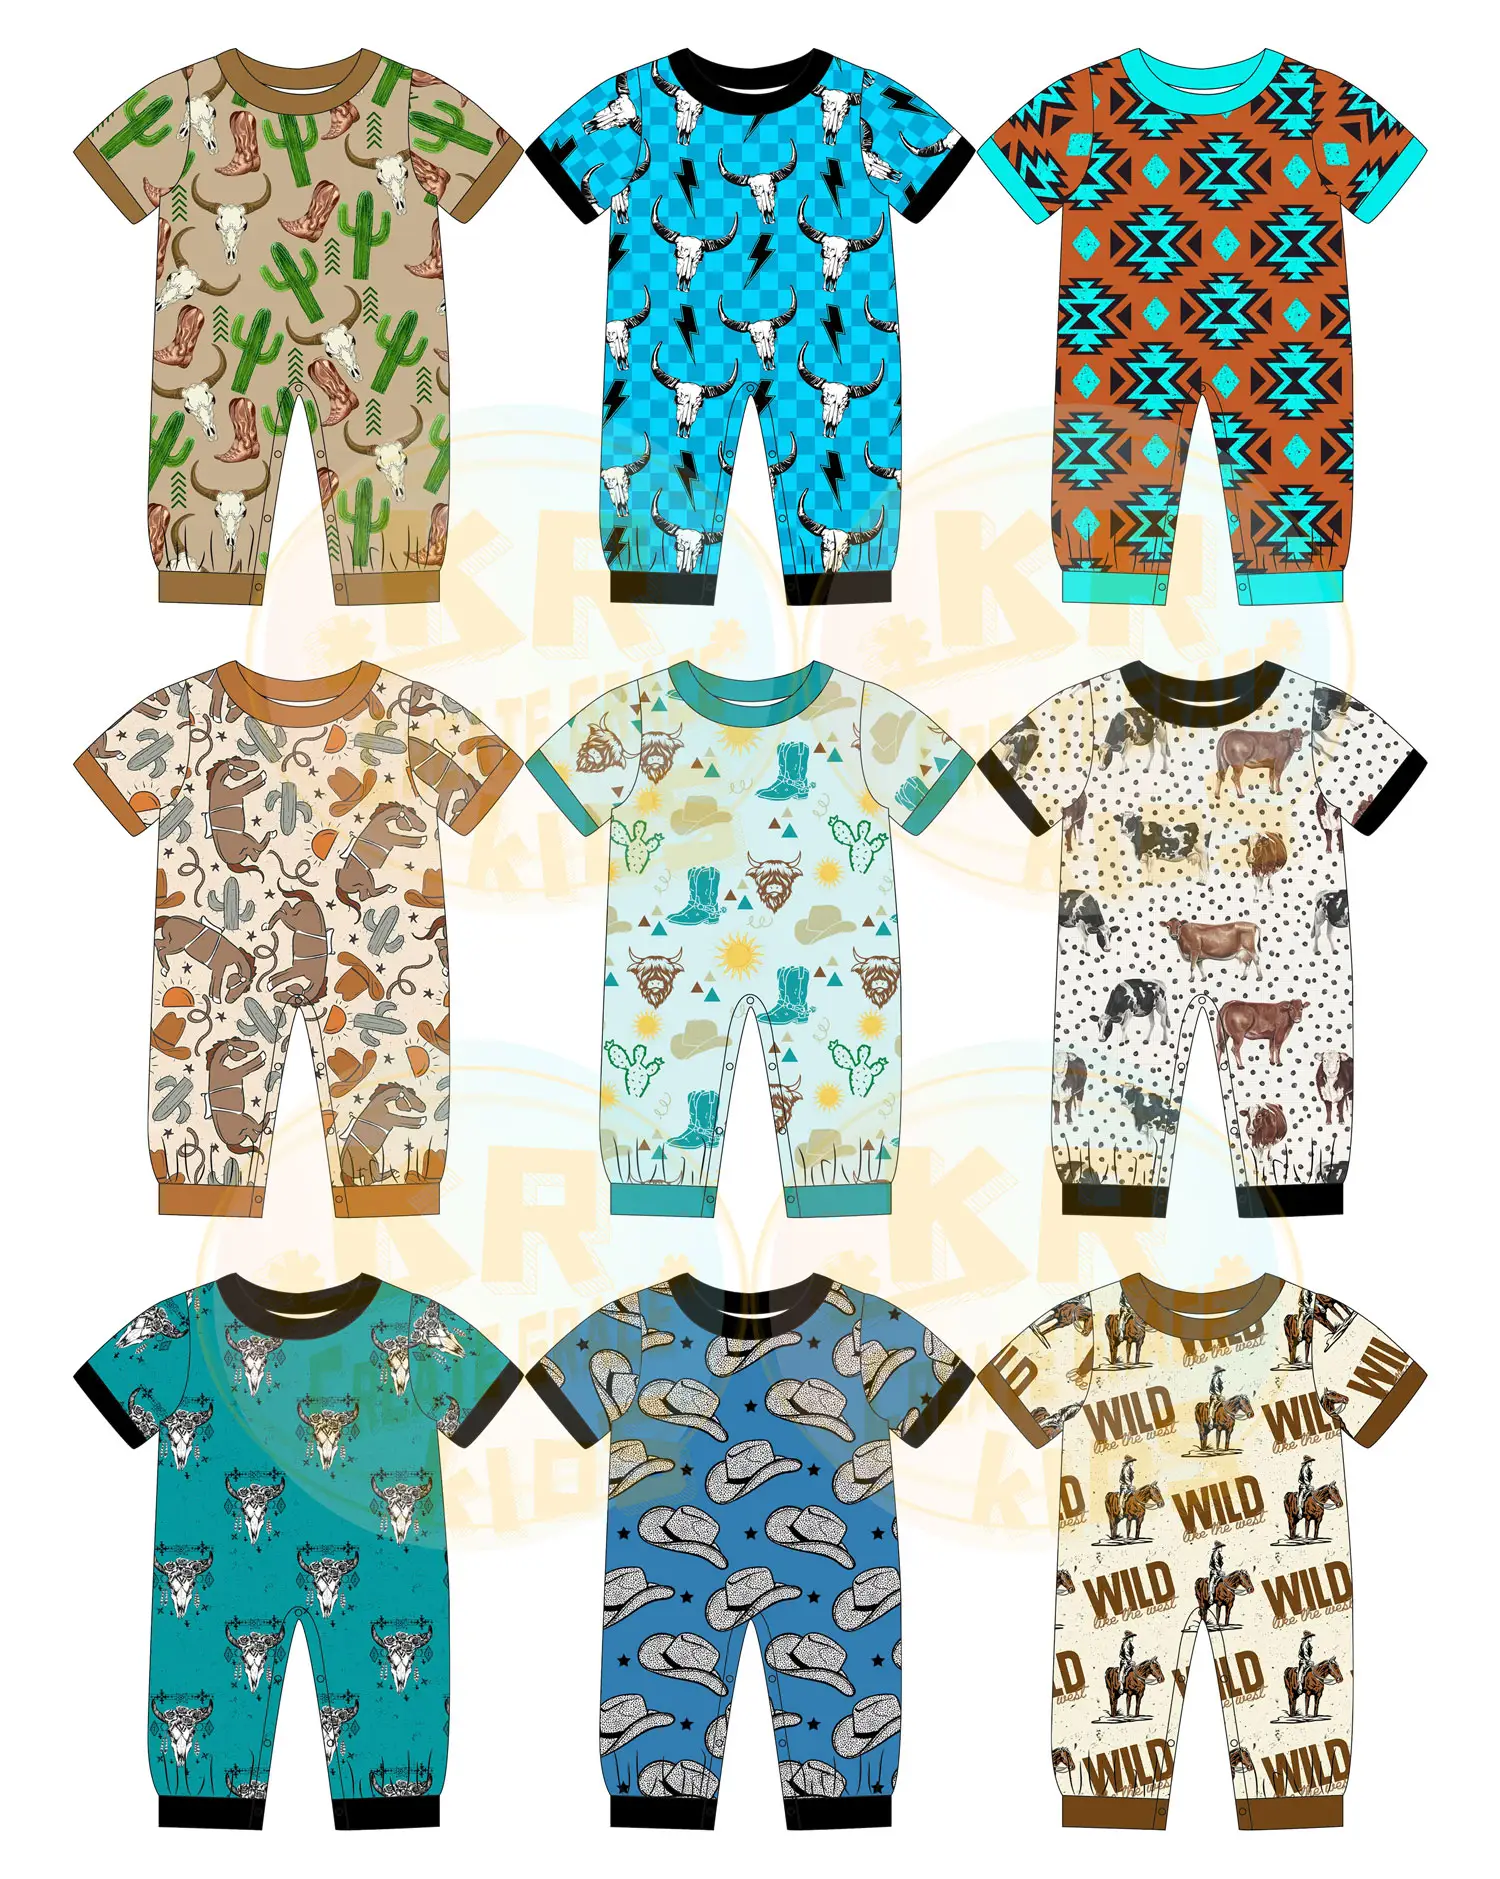 ベビーノースリーブロンパースジッパー幼児パジャマユニセックス幼児サマージャンプスーツ竹衣装幼児フットレスパジャマ